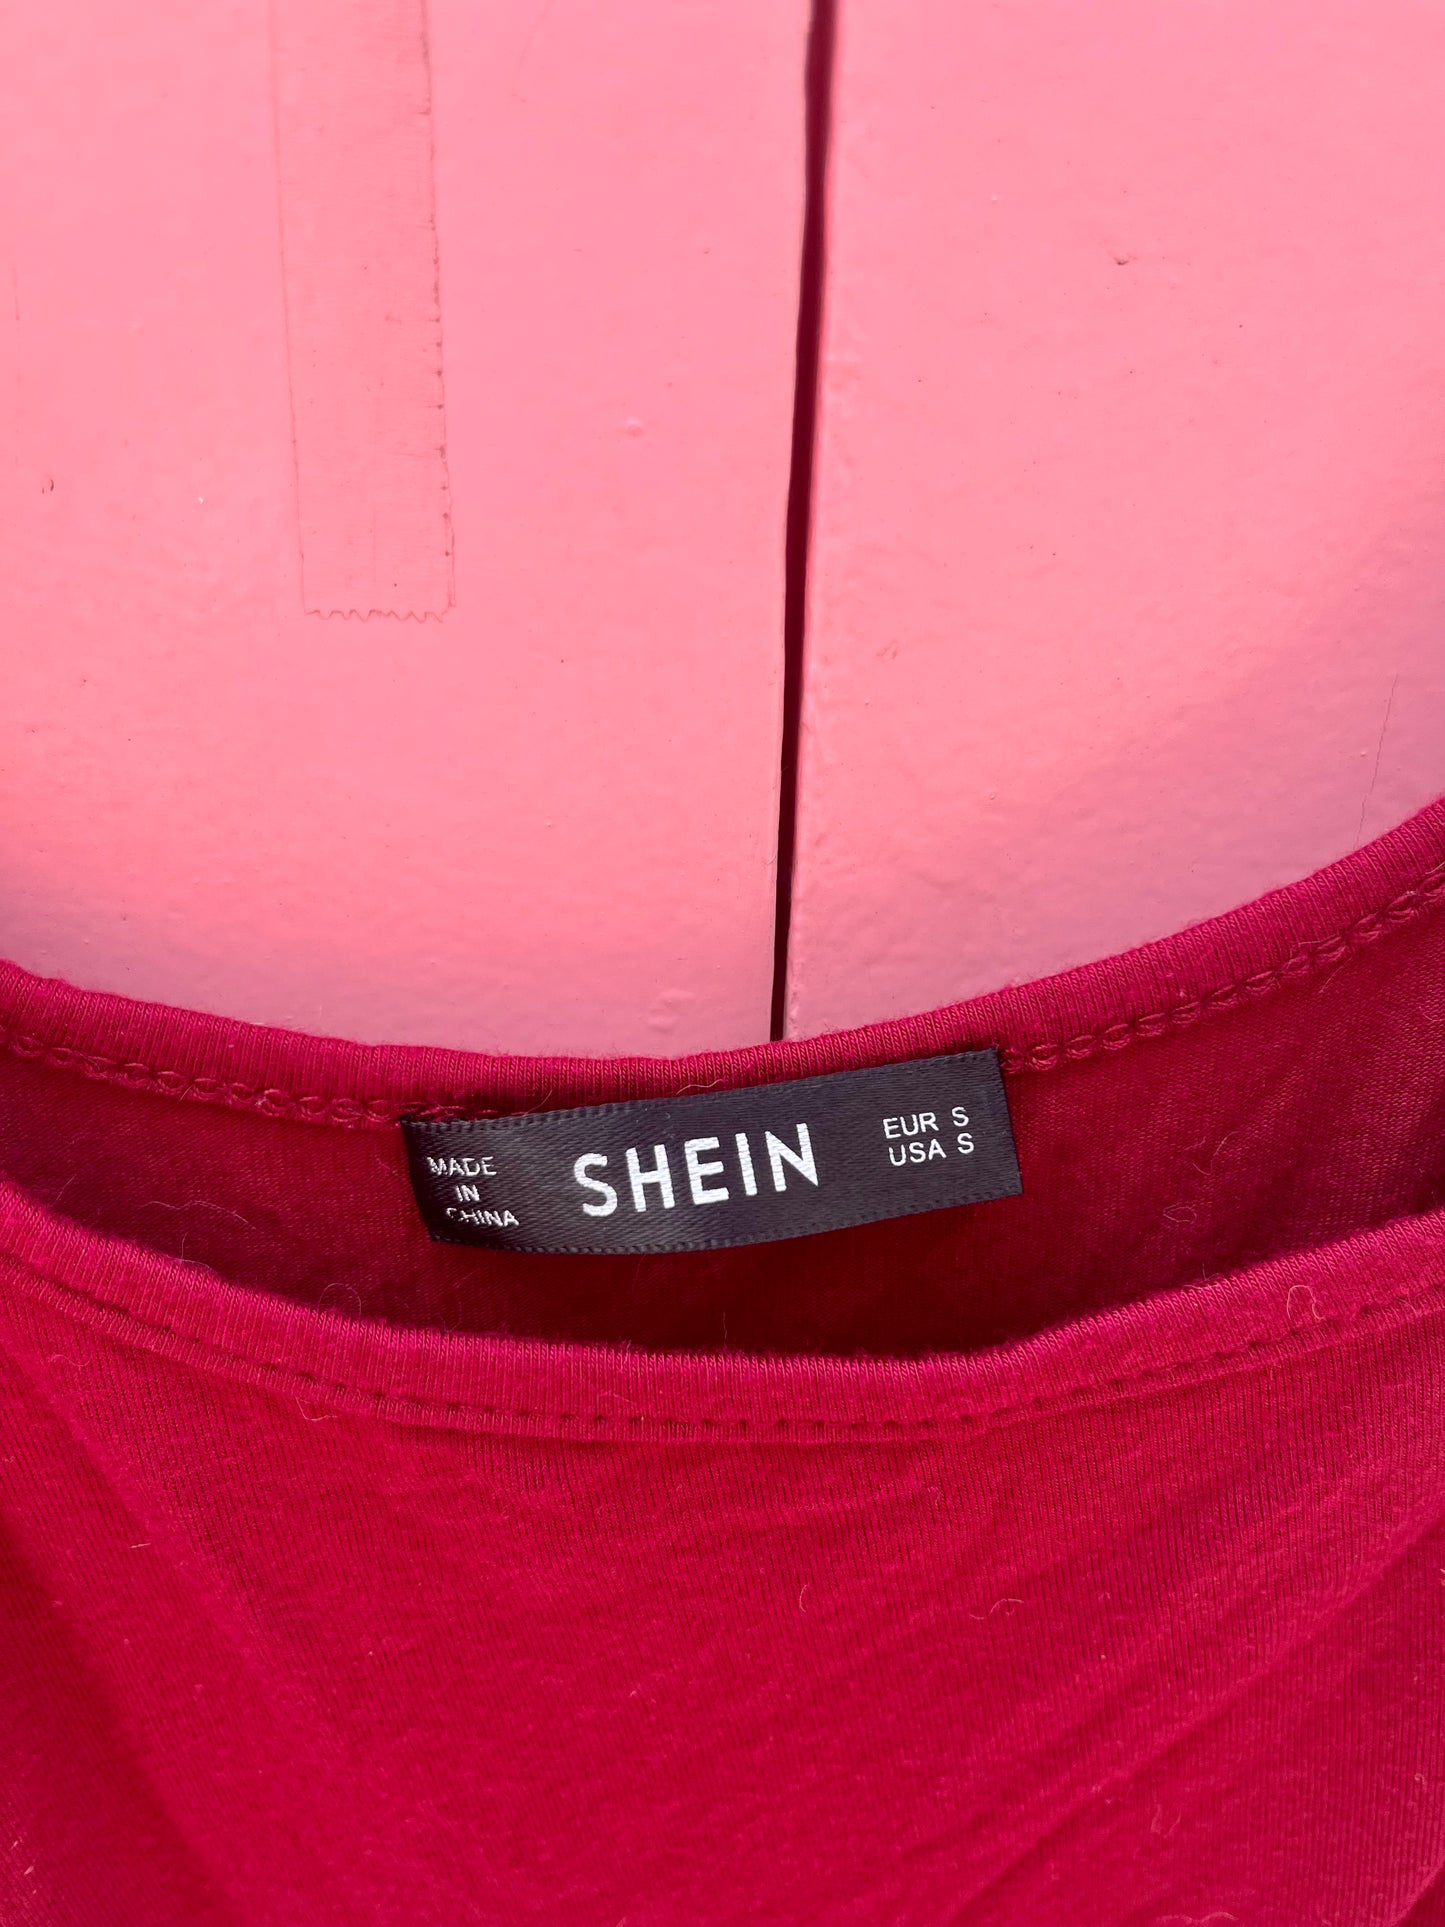 La jupe moulante à bretelles, SHEIN, taille 34